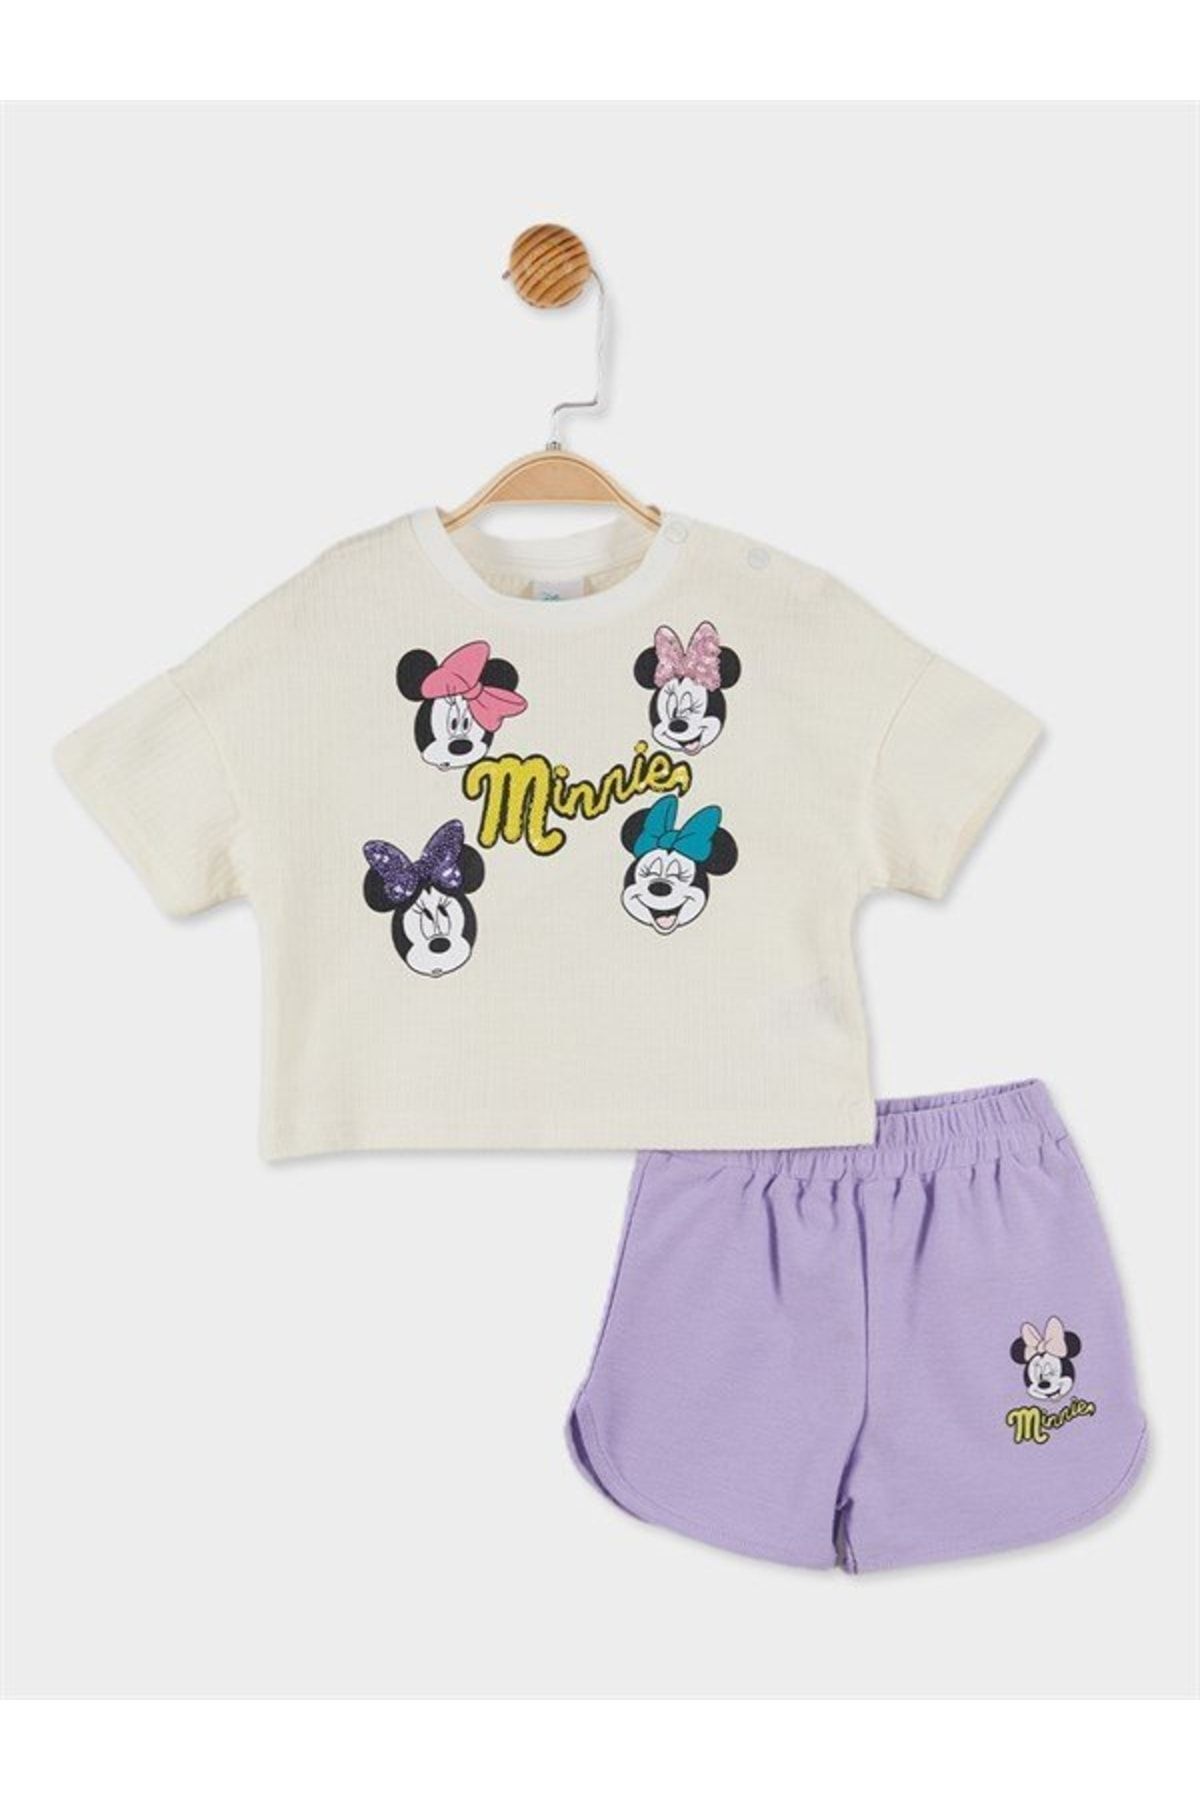 DİSNEY Minnie Mouse Lisanslı Pullu Kız Bebek Tişört Ve Şort 2'li Takım